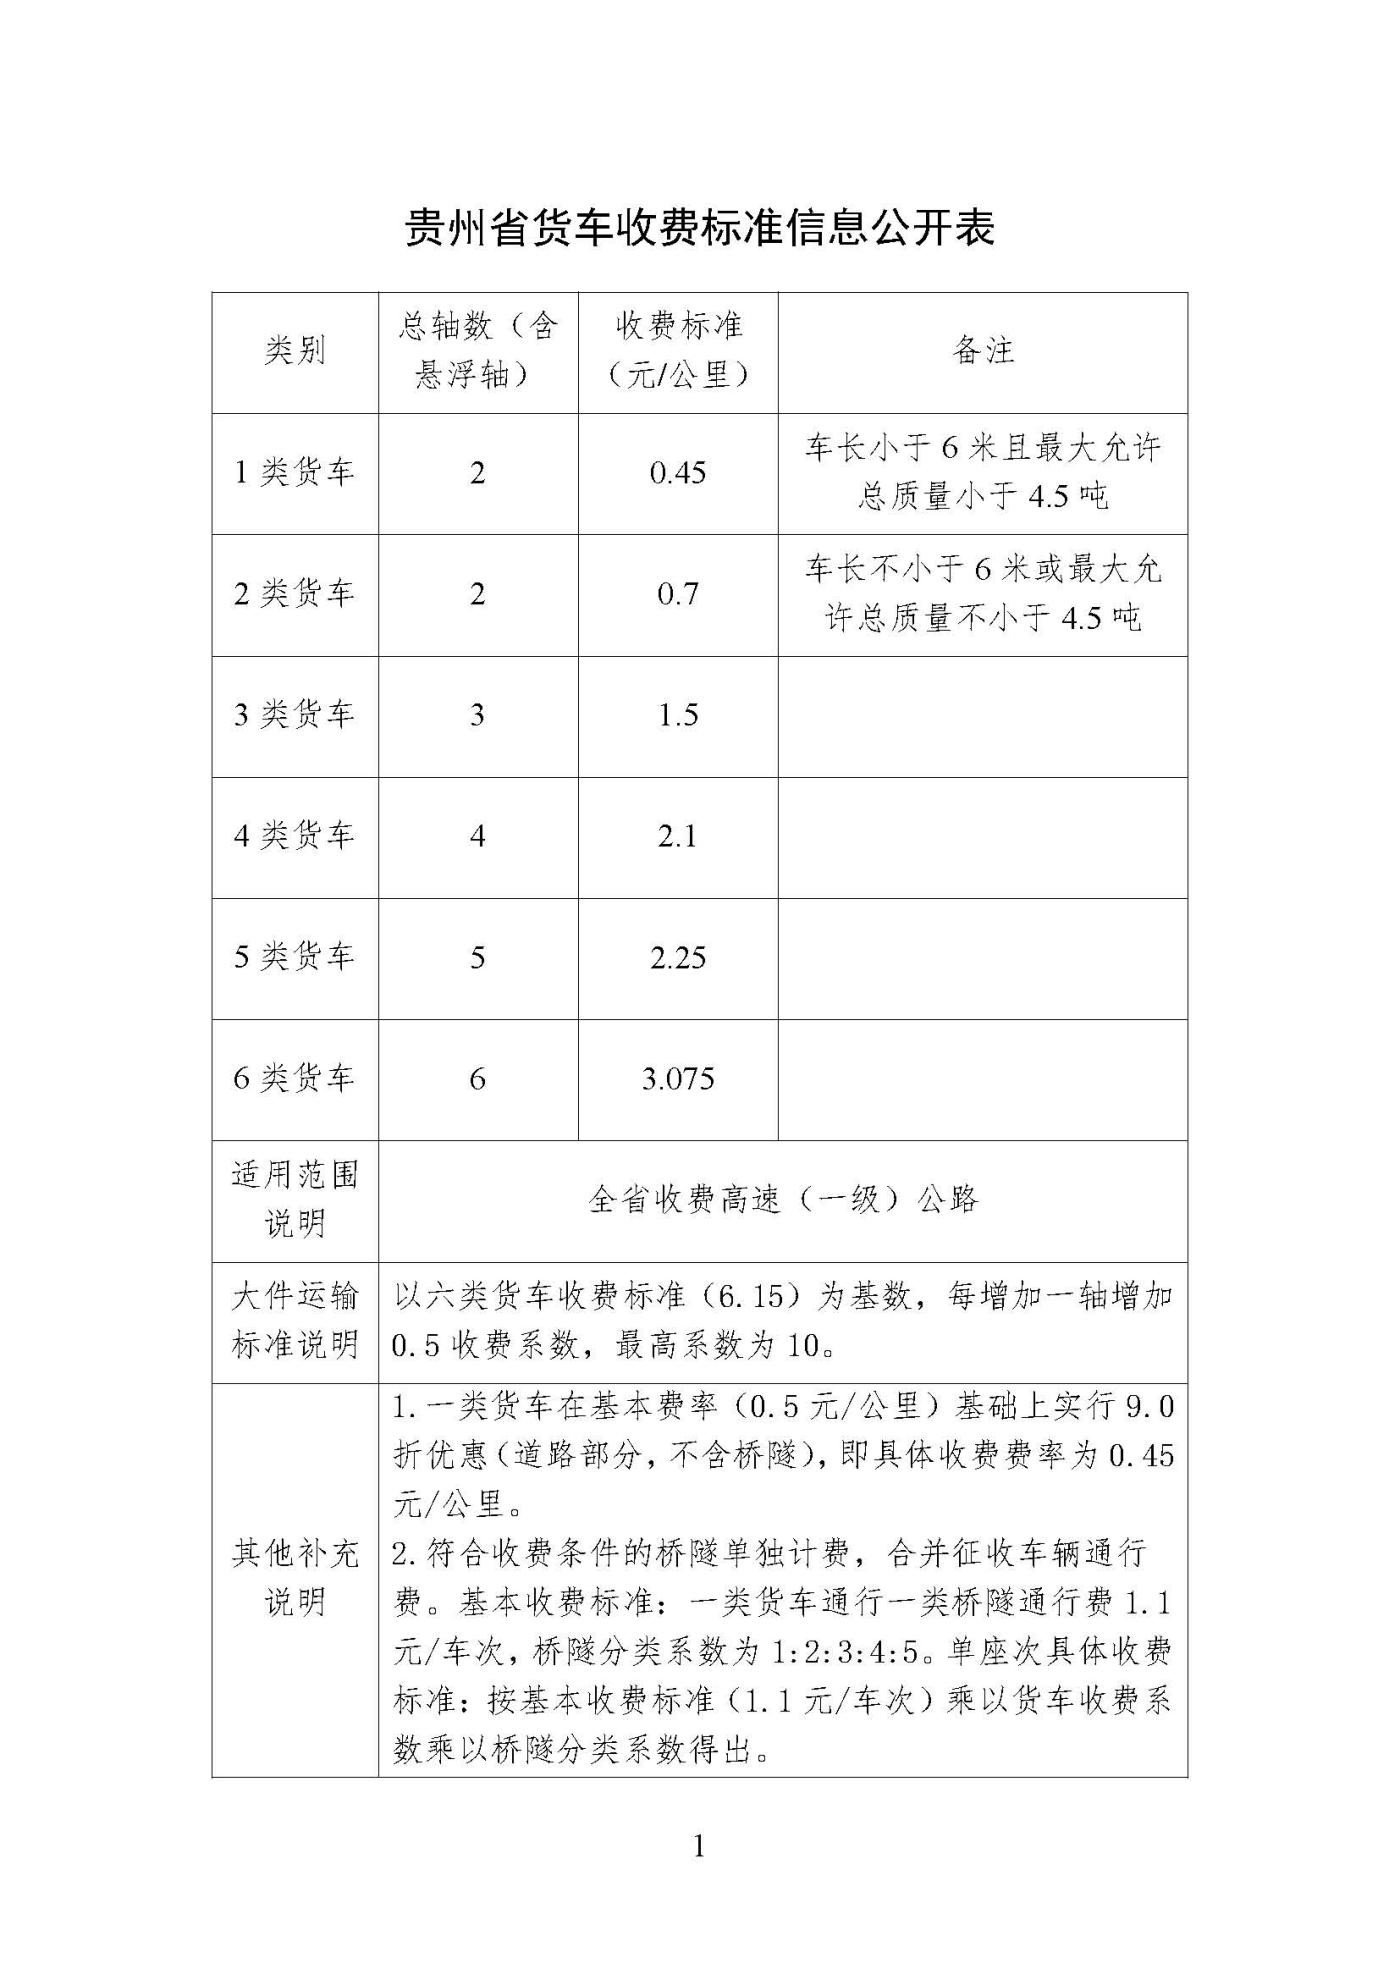 贵州省货车收费标准信息公开表.jpg